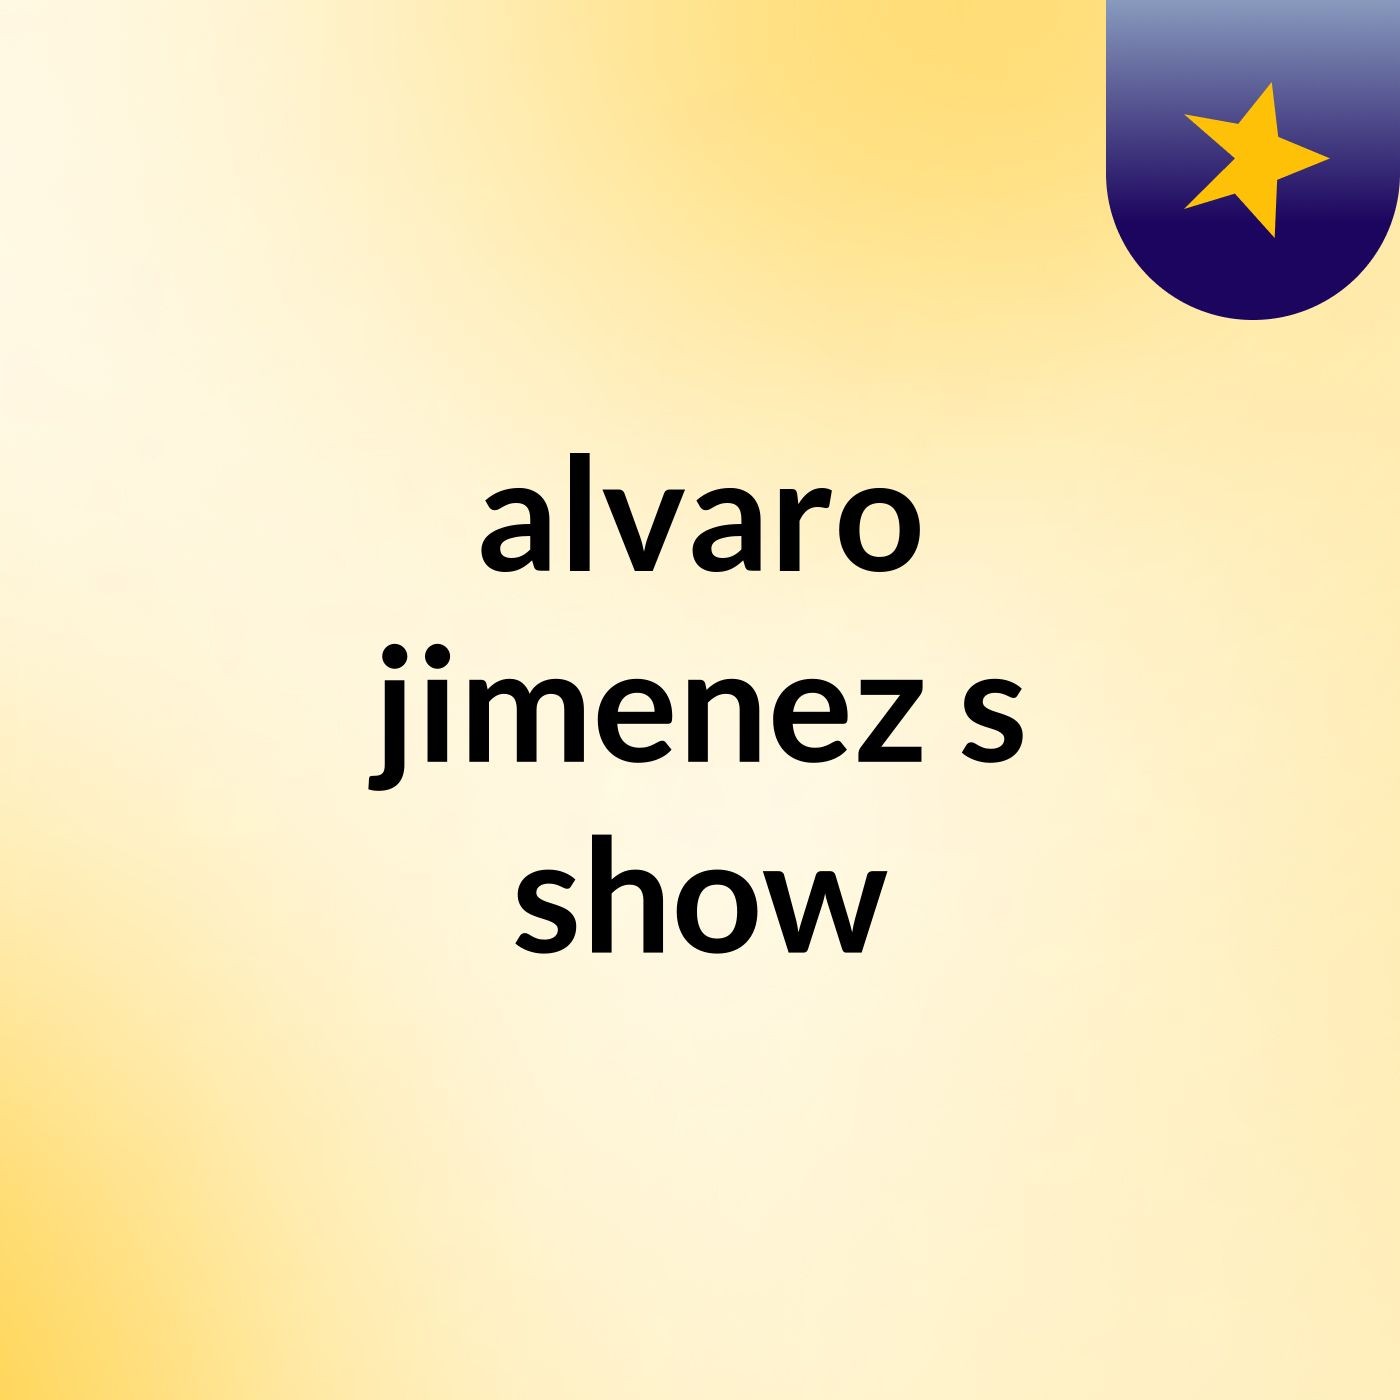 alvaro jimenez's show